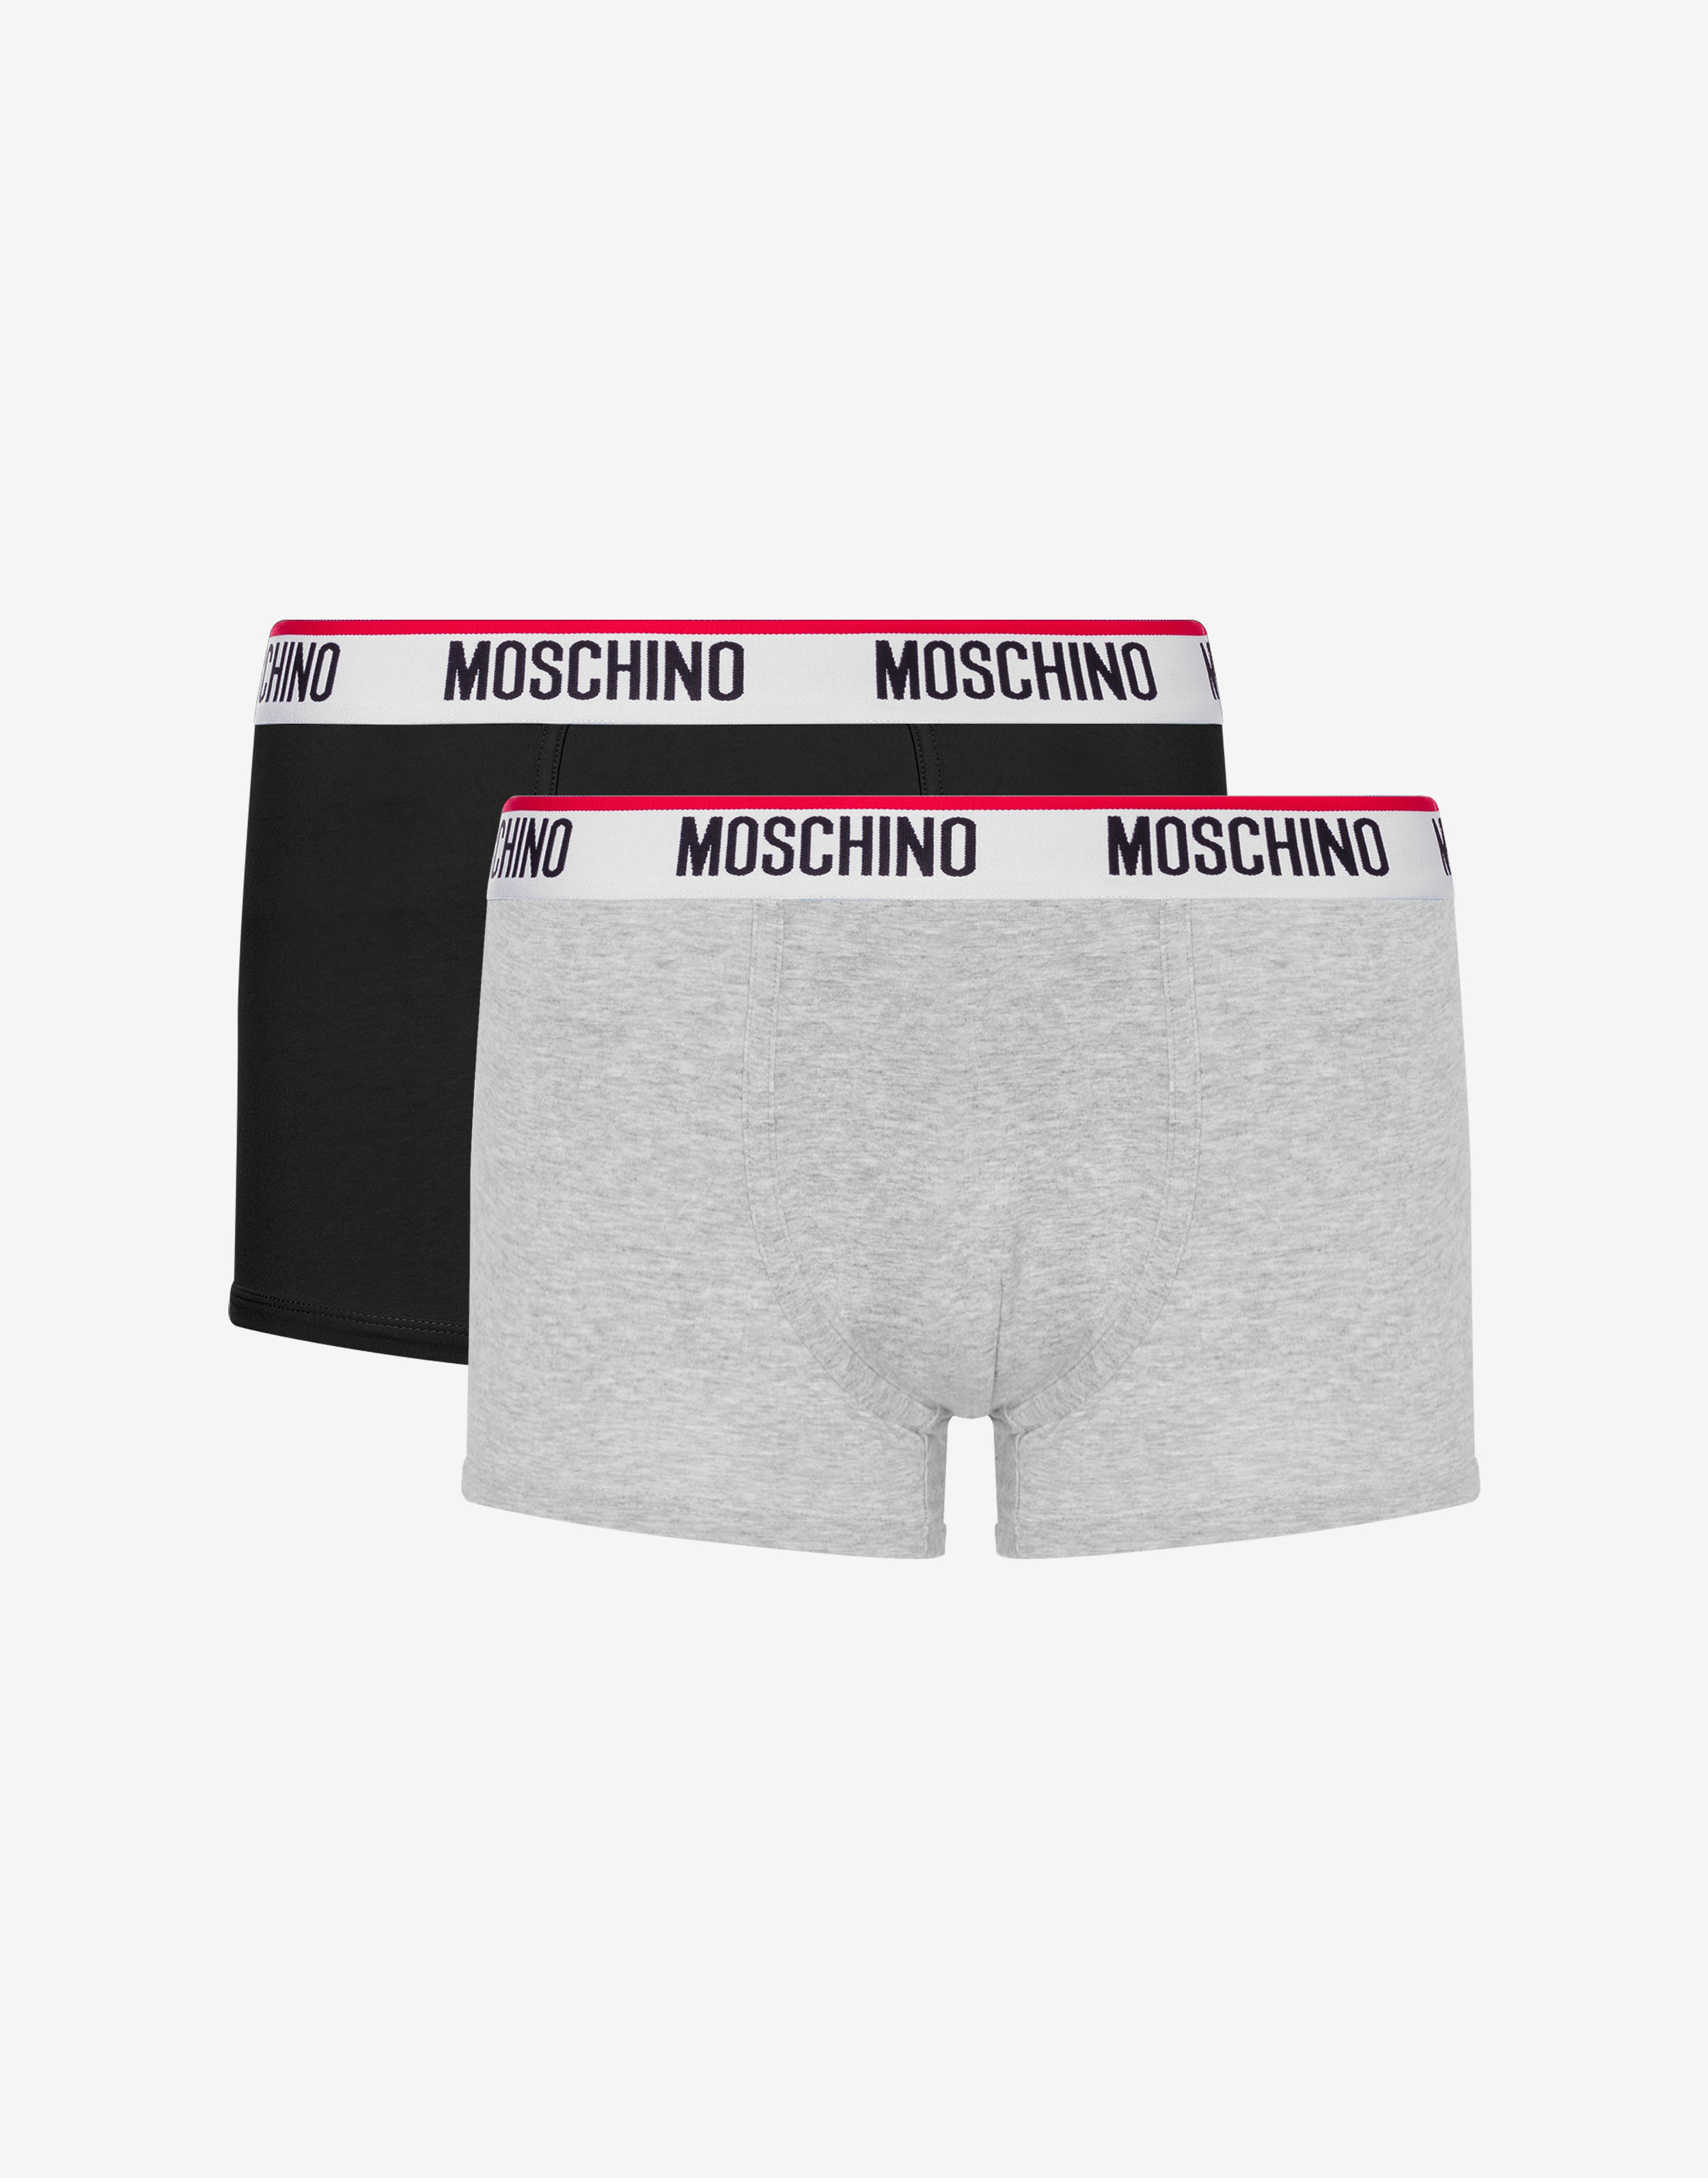 MOSCHINO, White Men's Boxer